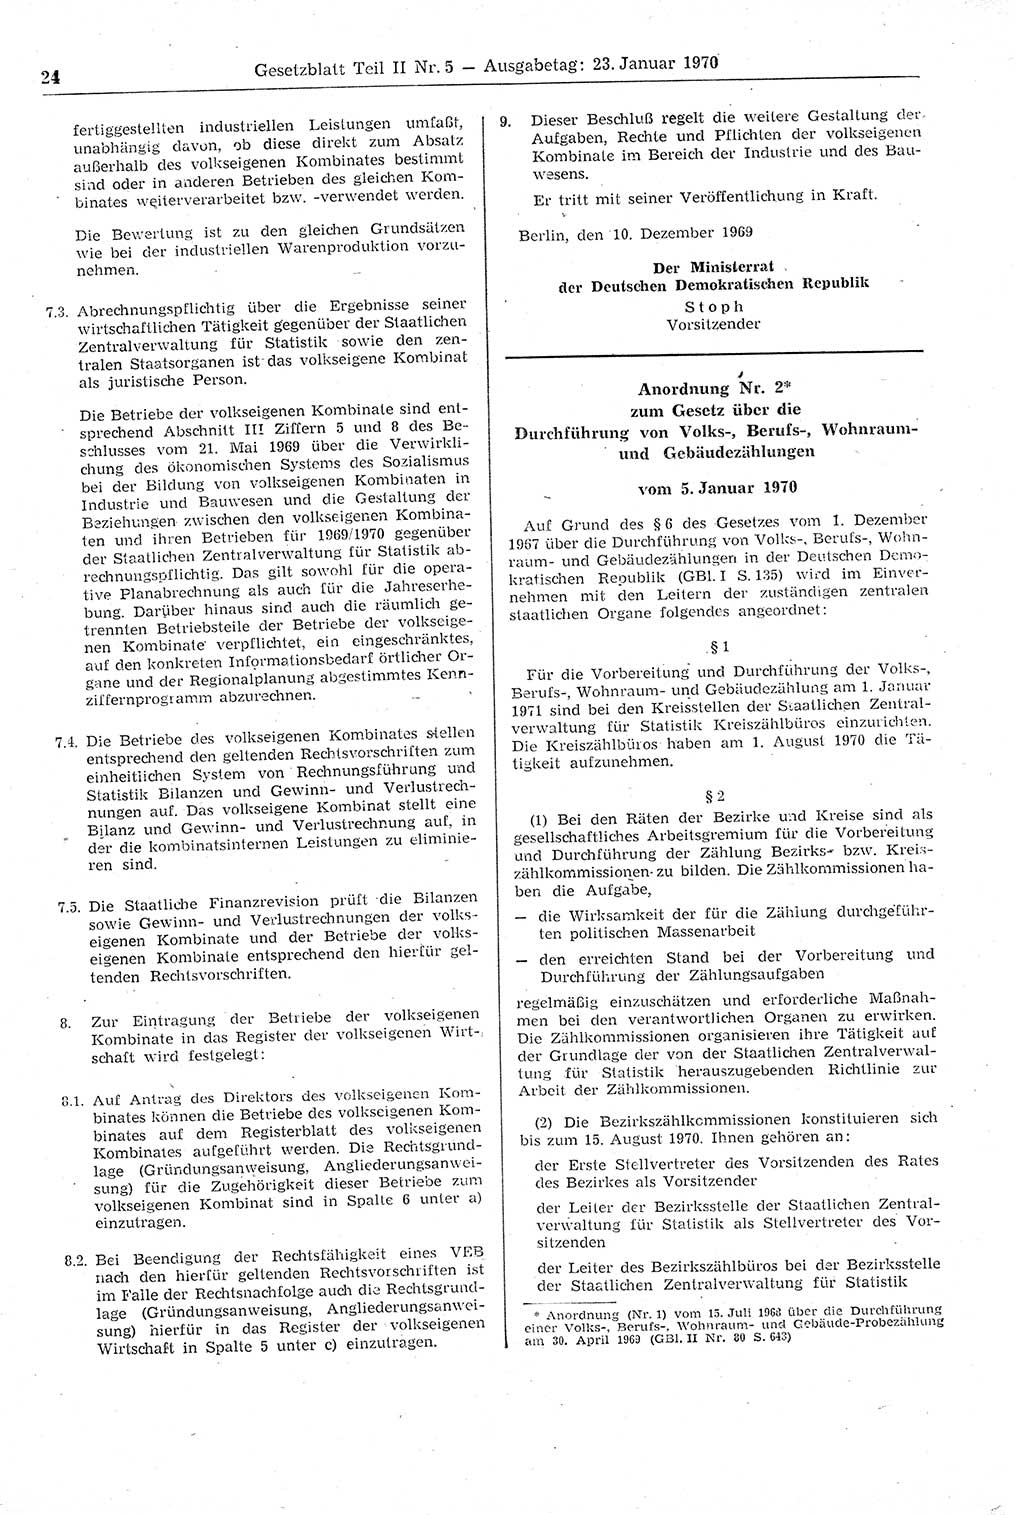 Gesetzblatt (GBl.) der Deutschen Demokratischen Republik (DDR) Teil ⅠⅠ 1970, Seite 24 (GBl. DDR ⅠⅠ 1970, S. 24)